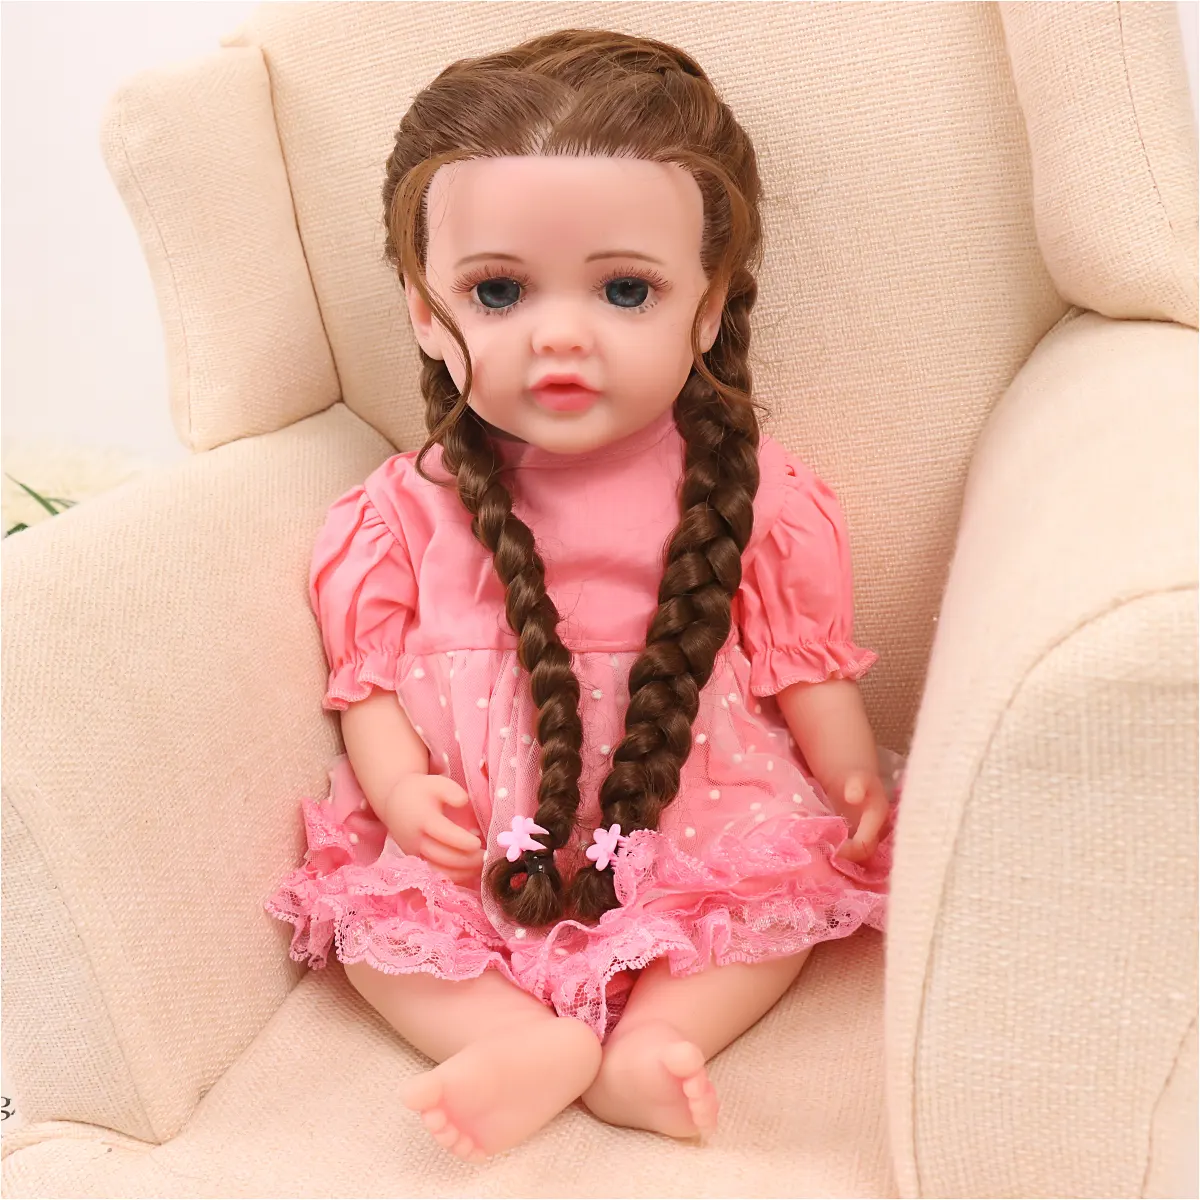 Vendita calda bambole Reborn realistiche che sembrano bambole Bebe in vinile reale per giocattoli per bambini bambola in Silicone Reborn realistico